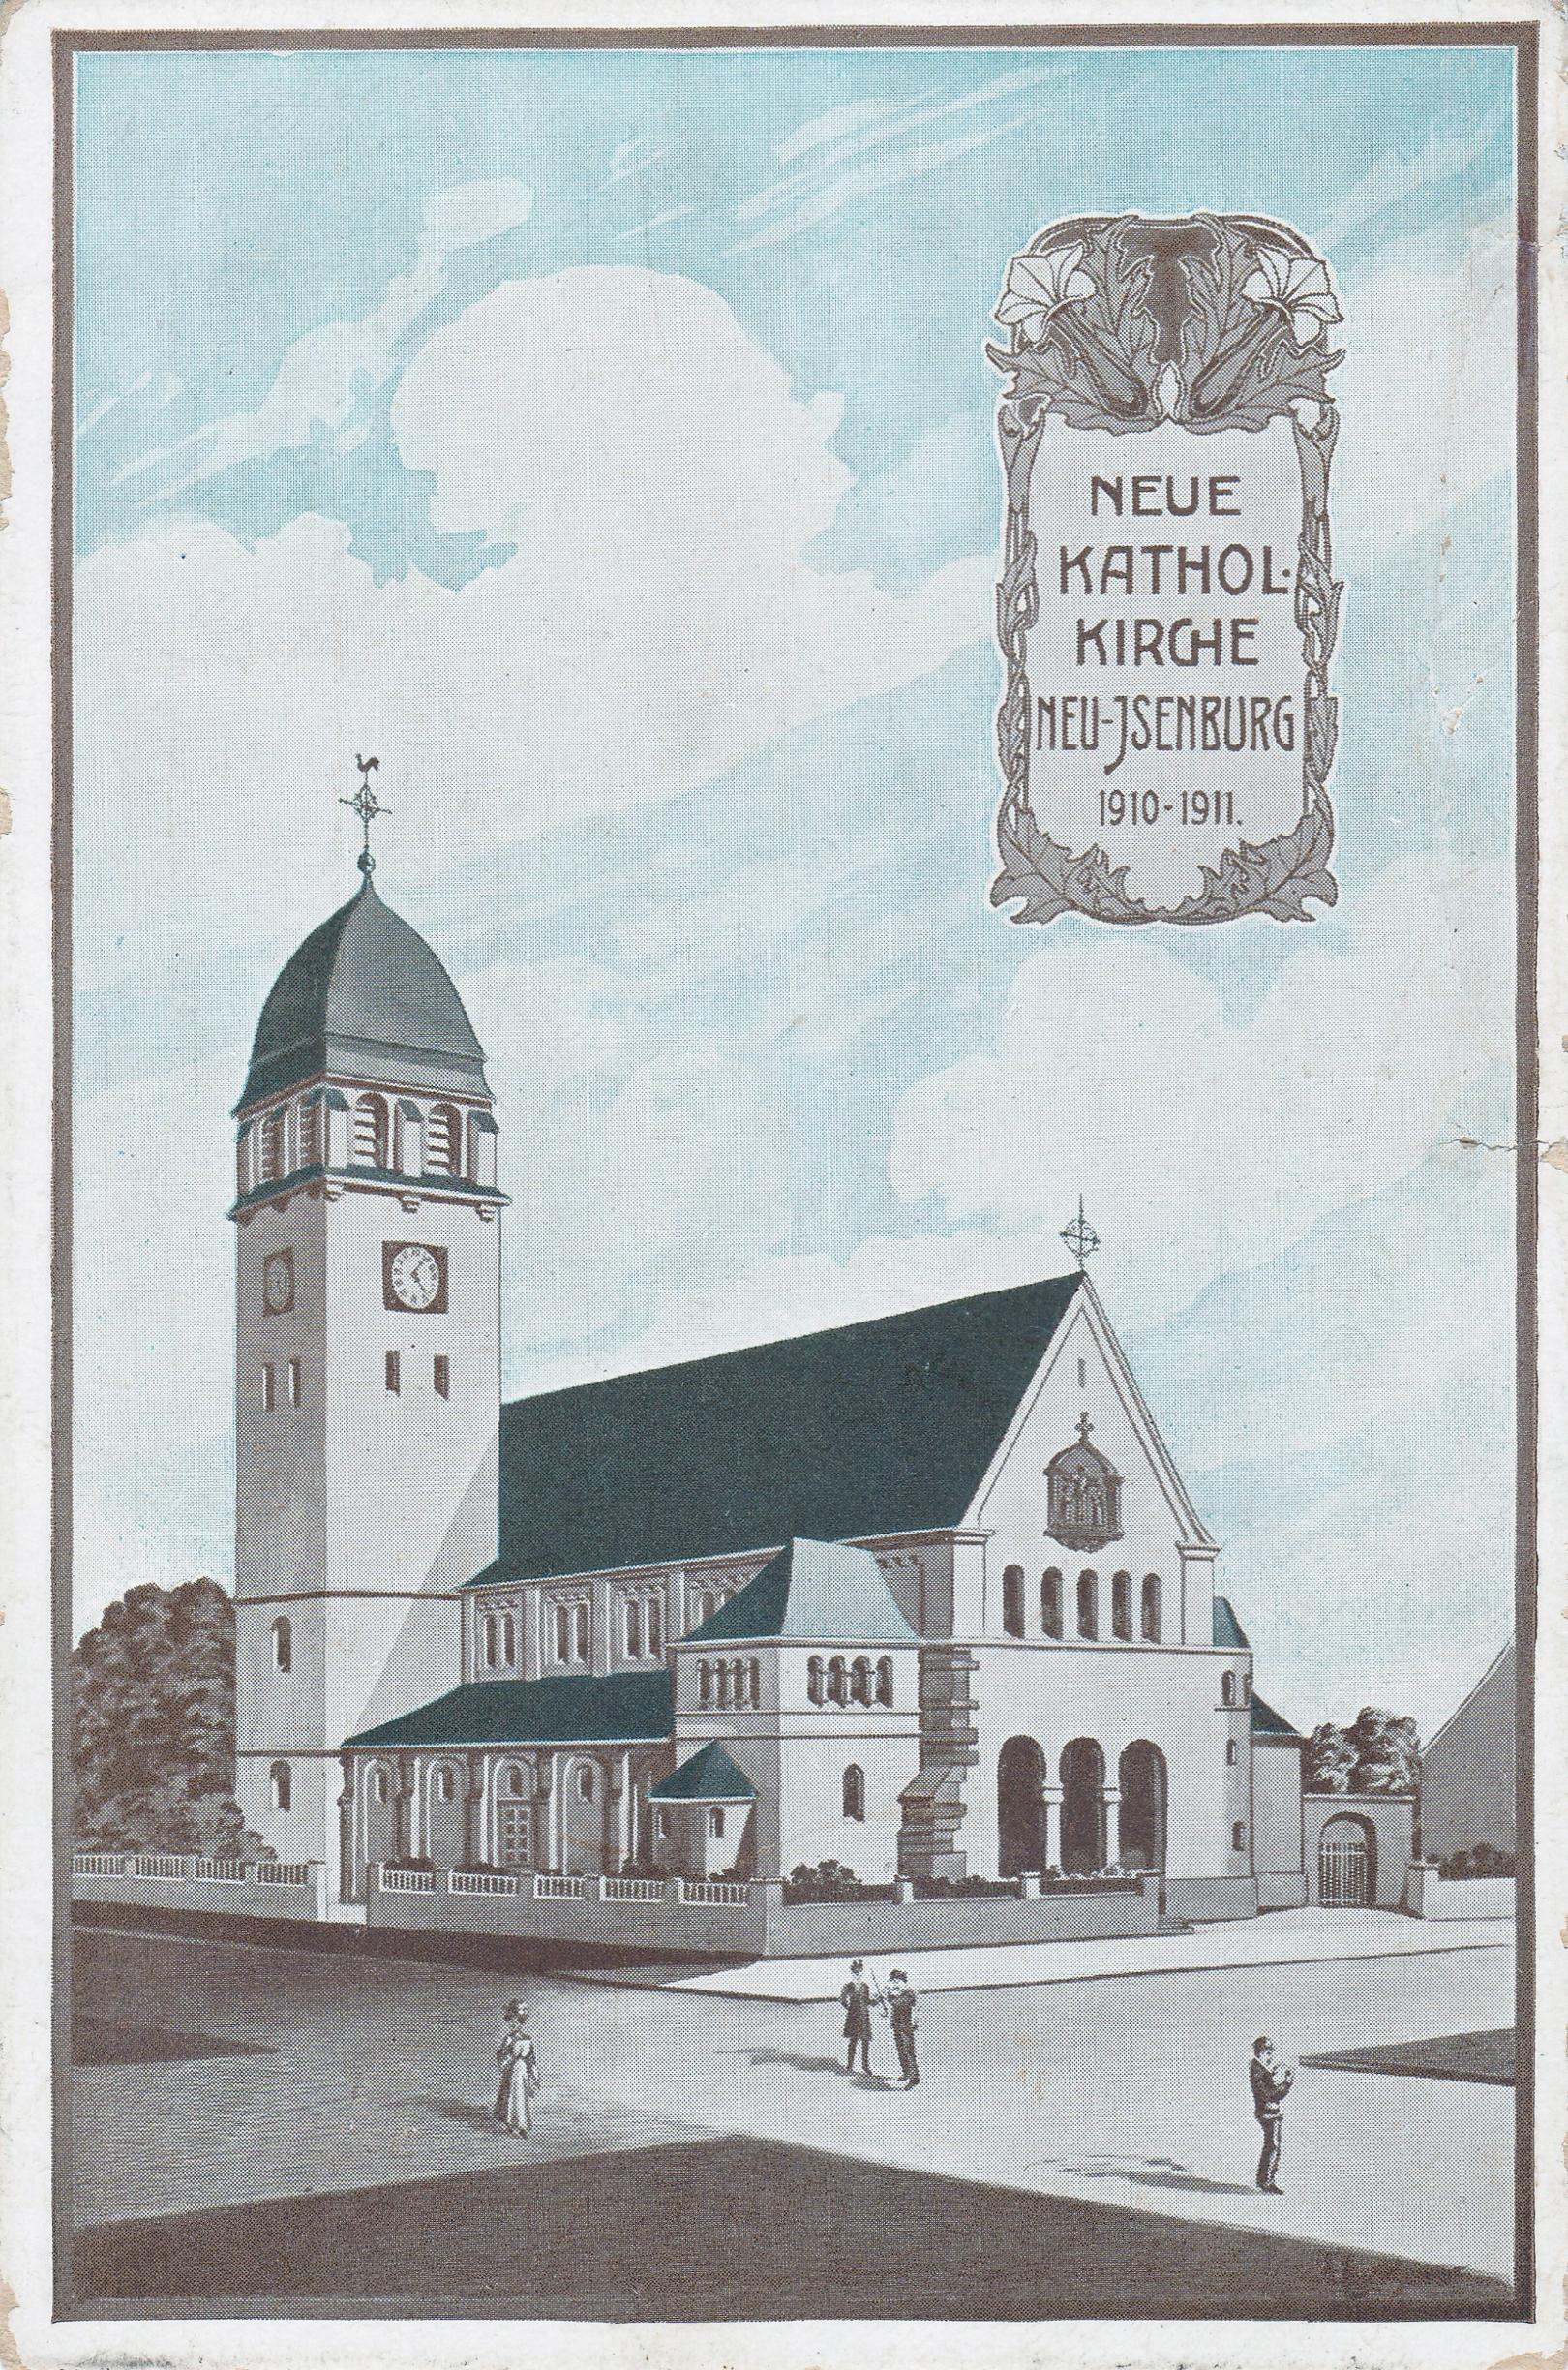 St. Josef 1910-1911 (c) D. Thiel